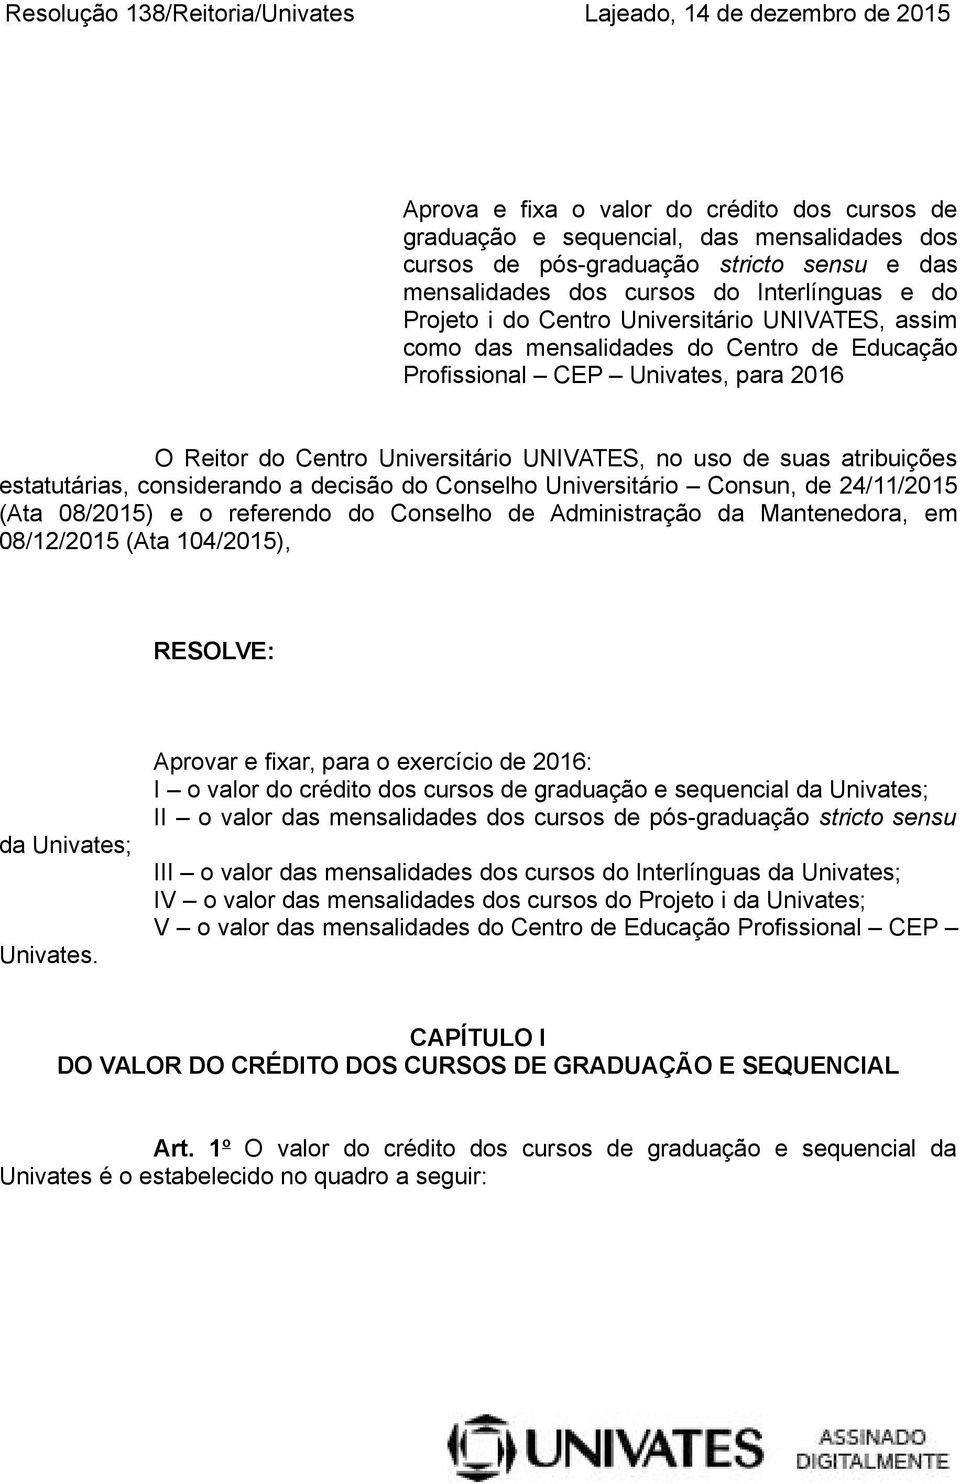 Universitário UNIVATES, no uso de suas atribuições estatutárias, considerando a decisão do Conselho Universitário Consun, de 24/11/2015 (Ata 08/2015) e o referendo do Conselho de Administração da